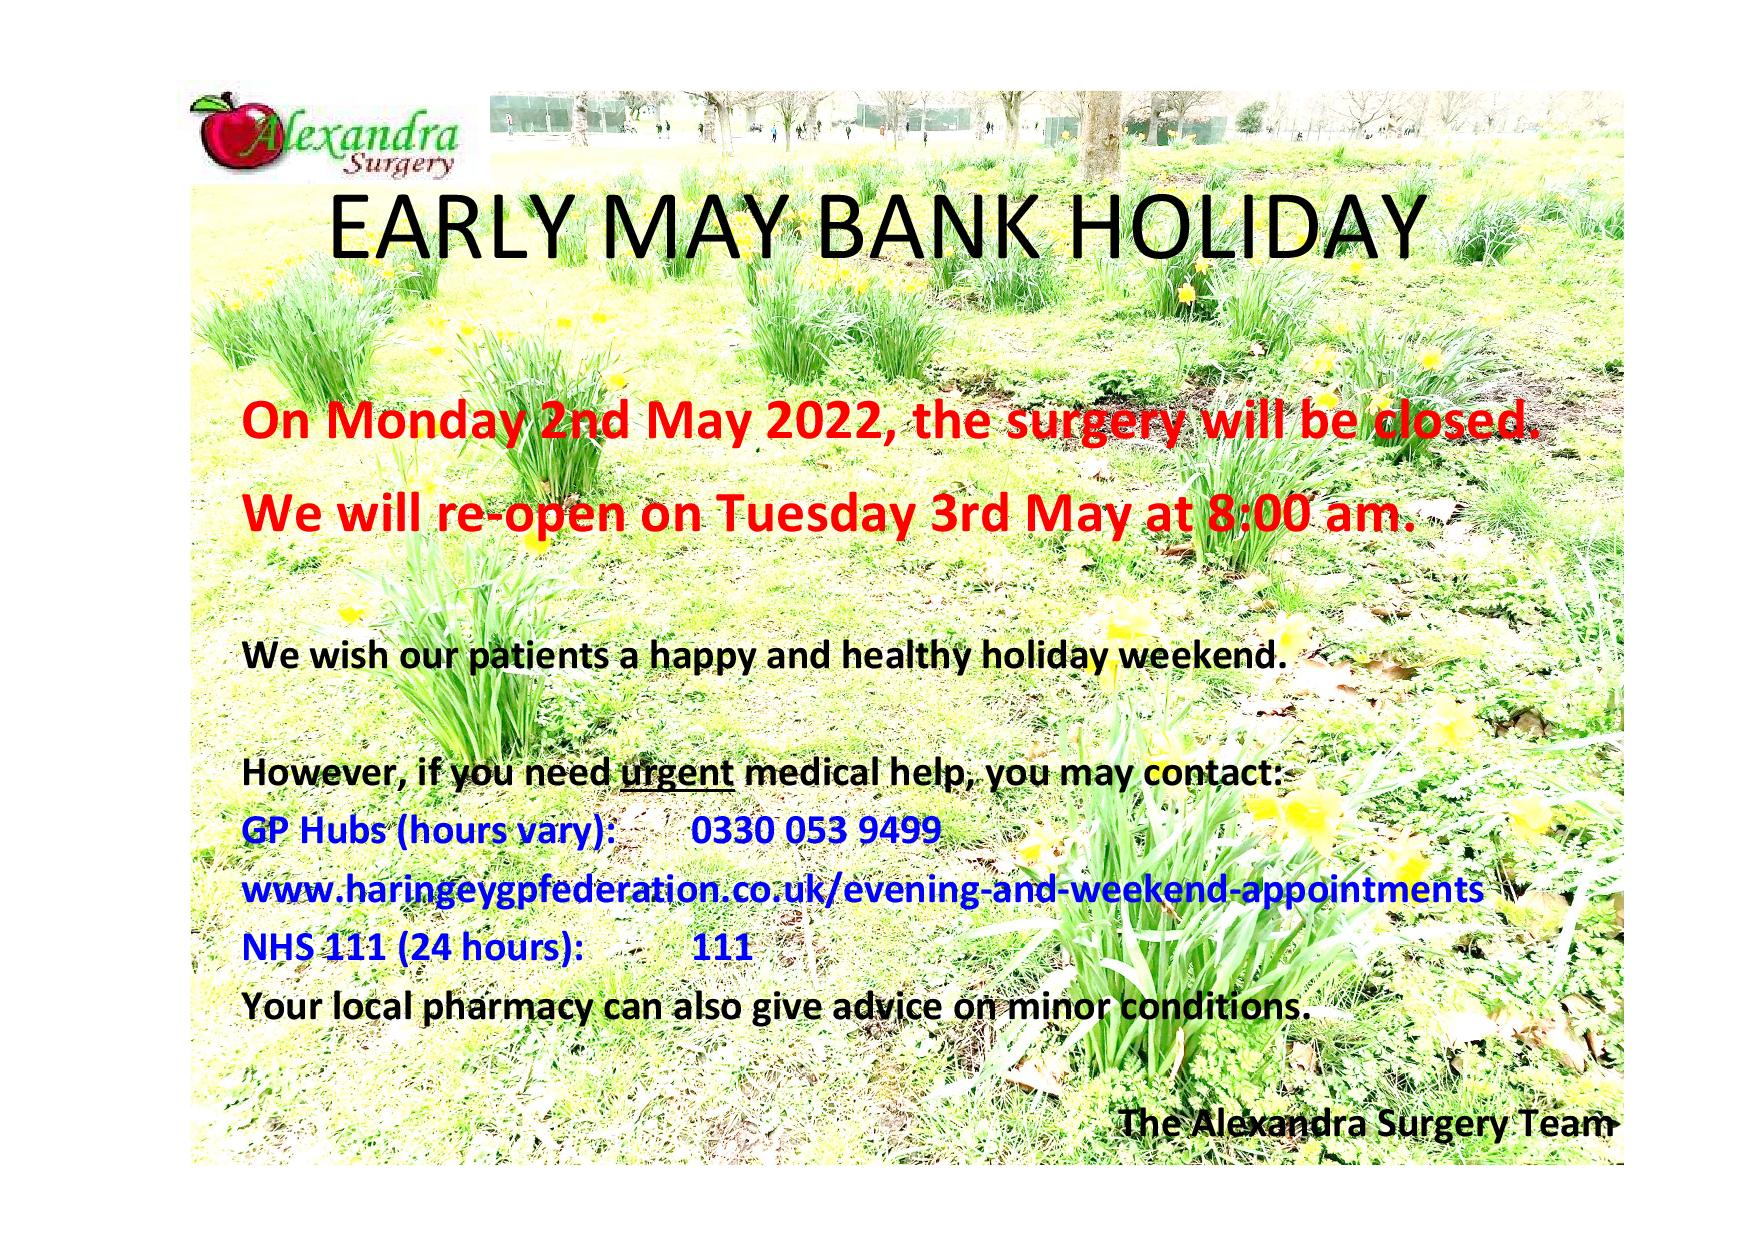 Early May bank holiday 2022